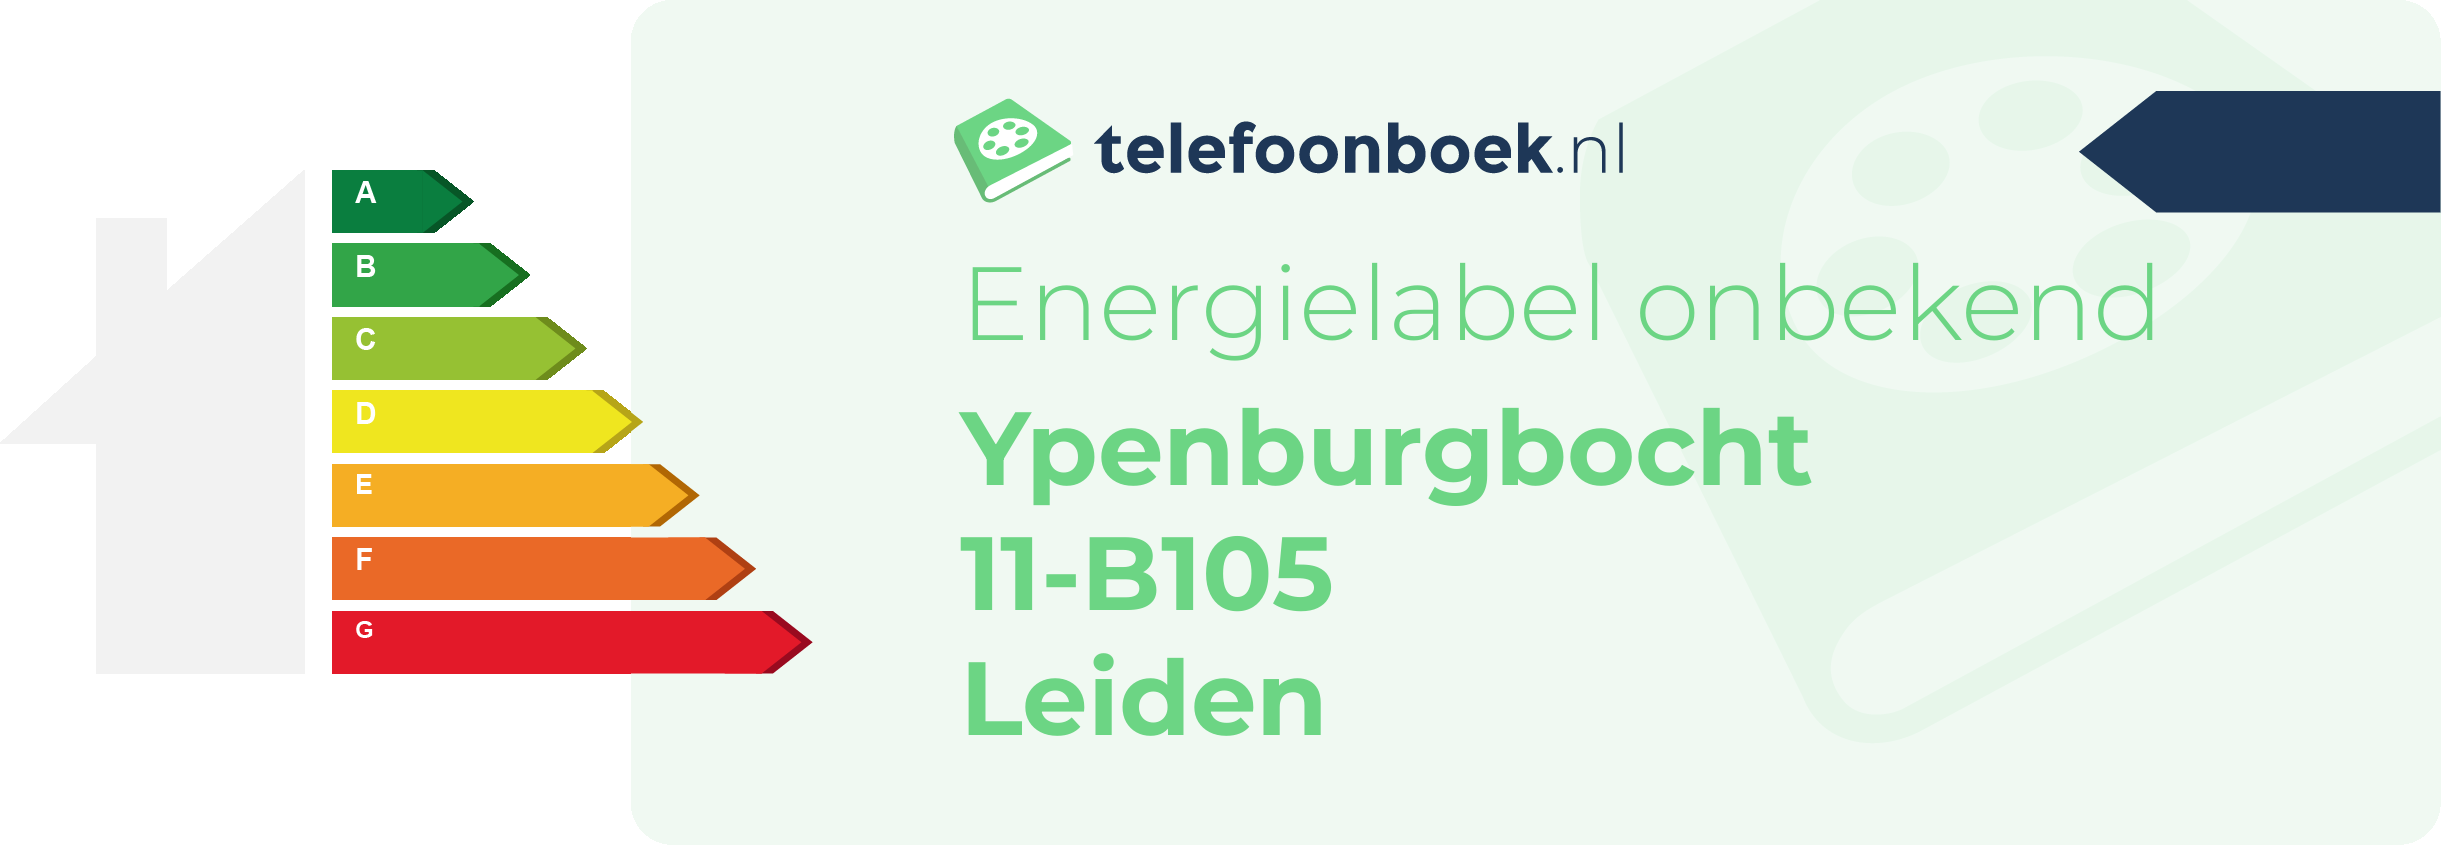 Energielabel Ypenburgbocht 11-B105 Leiden